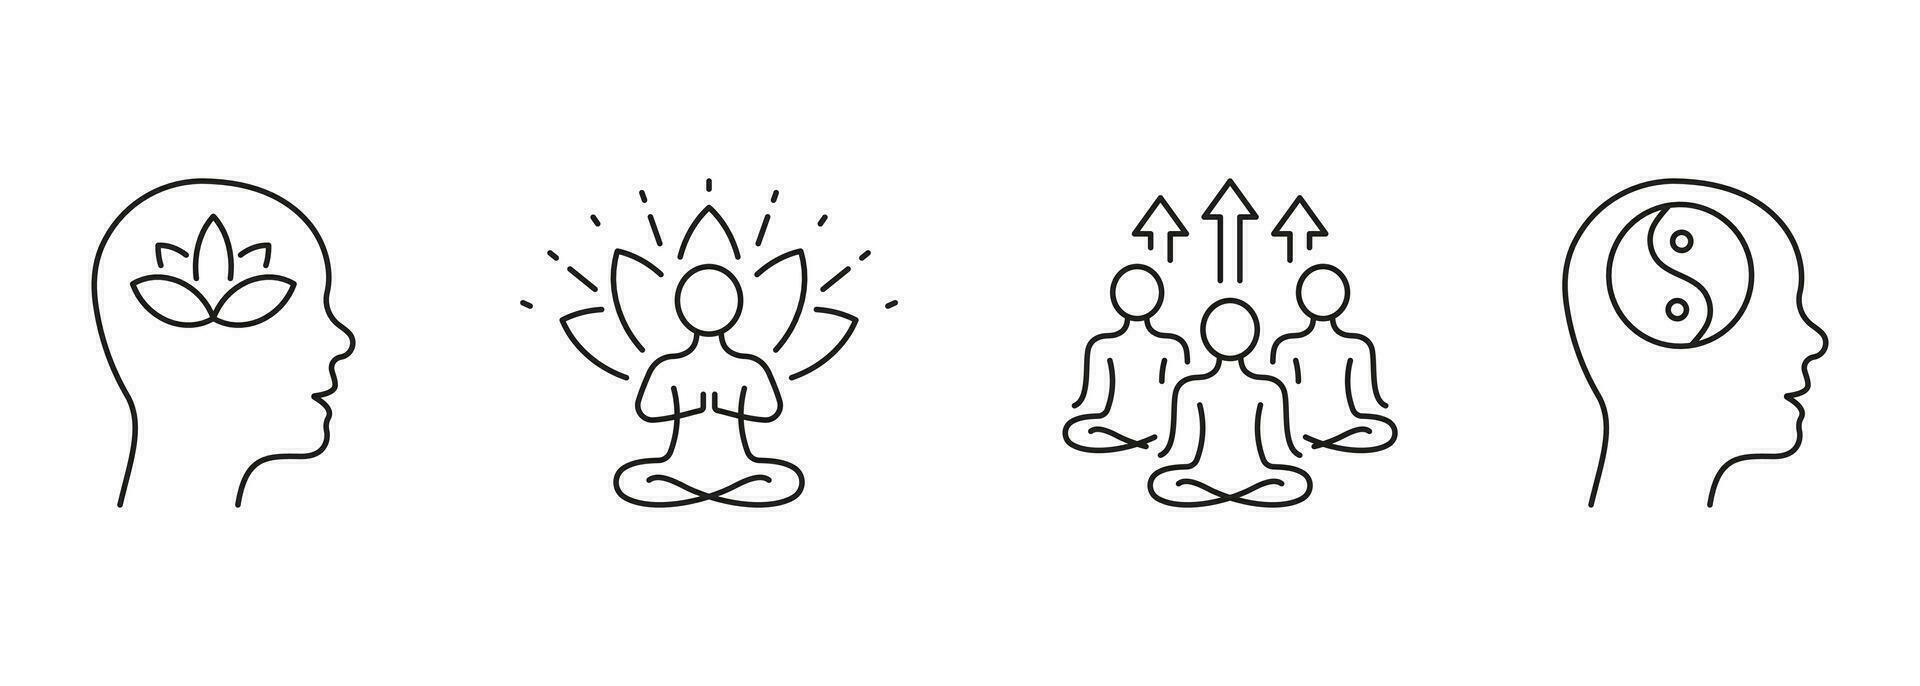 yoga et santé ligne icône ensemble. la personne méditer dans lotus position linéaire pictogramme. bien-être et calme esprit contour signe. yin Yang symbole, Zen pose. modifiable accident vasculaire cérébral. isolé vecteur illustration.